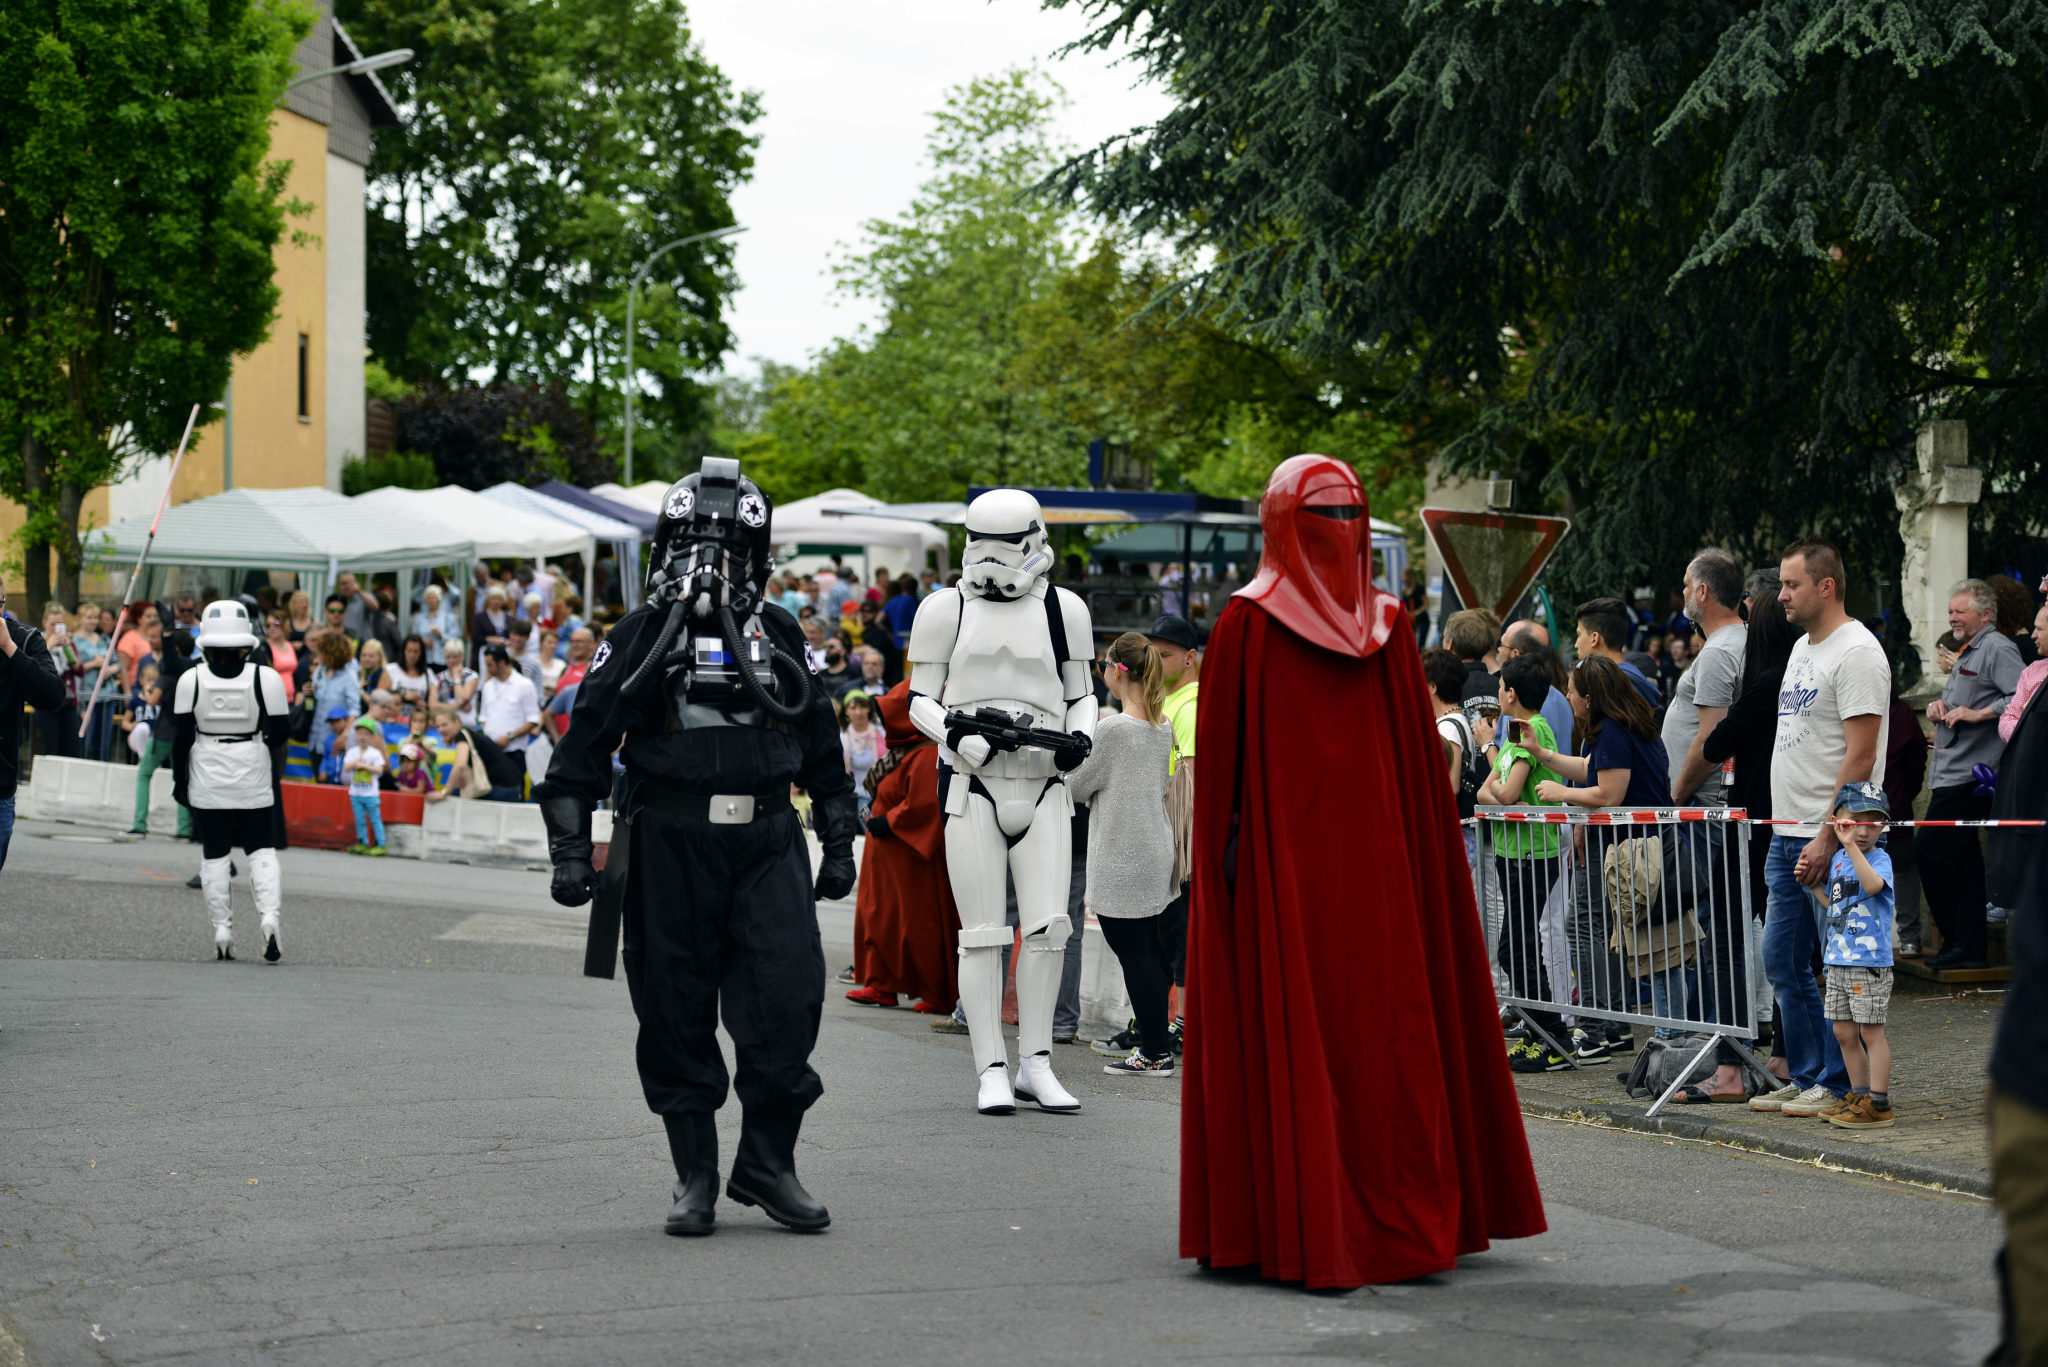 zu sehen sind mehrere Figuren aus dem Film Star Wars in originalgetreuen Masken und Kleidern bei einem Umzug anlaesslich der Bouser Maisause